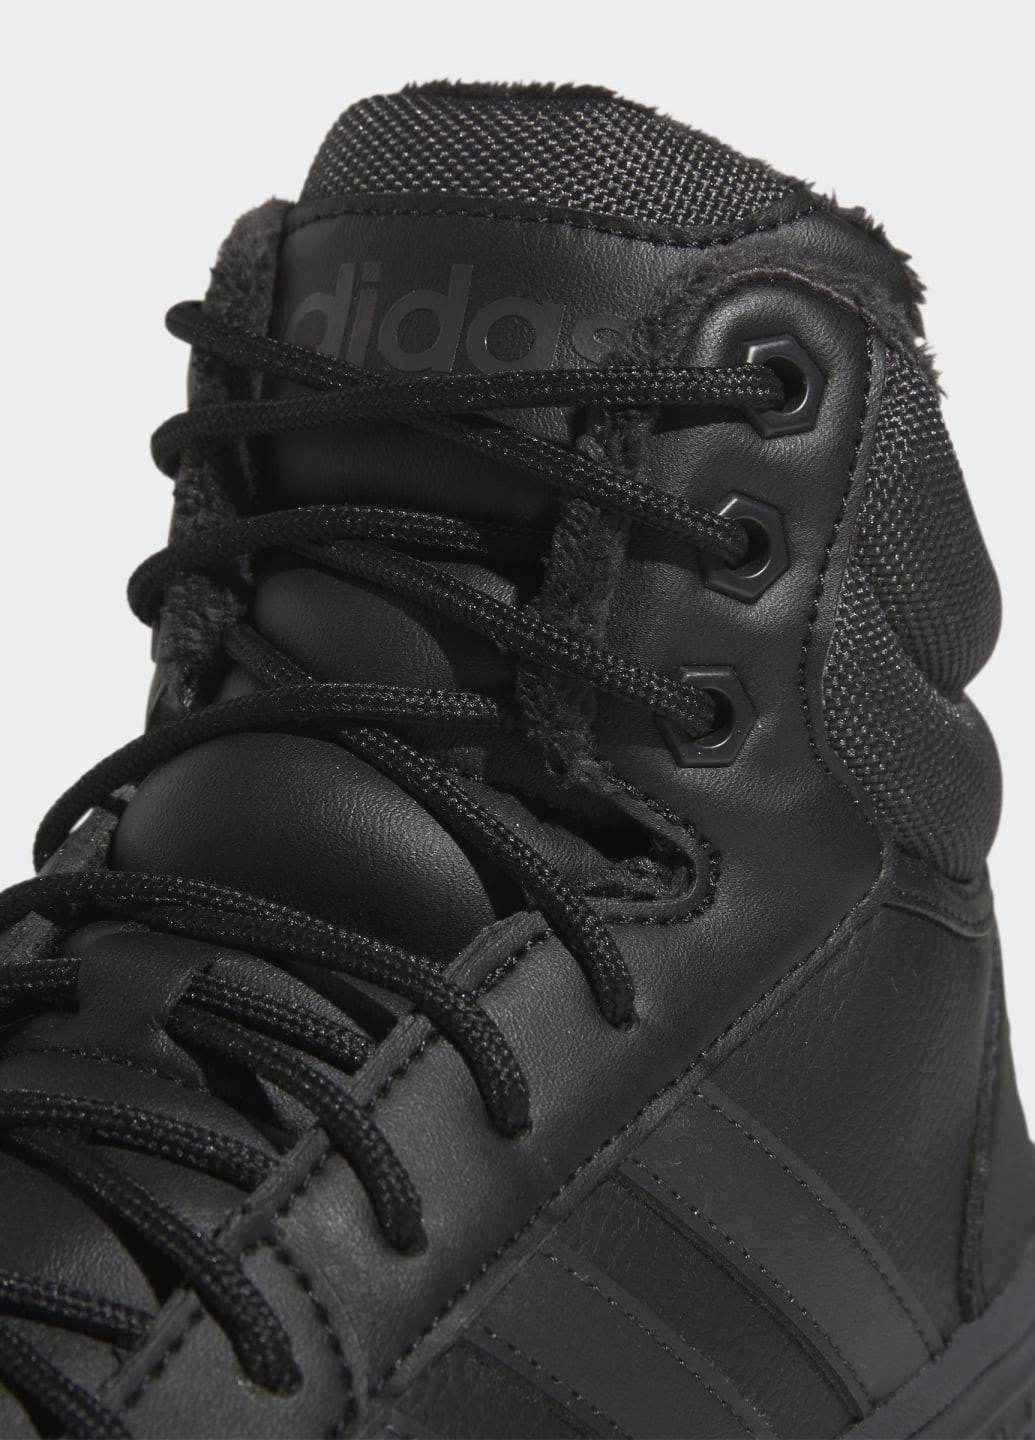 Черные осенние кроссовки hoops 3.0 mid lifestyle basketball classic fur lining adidas